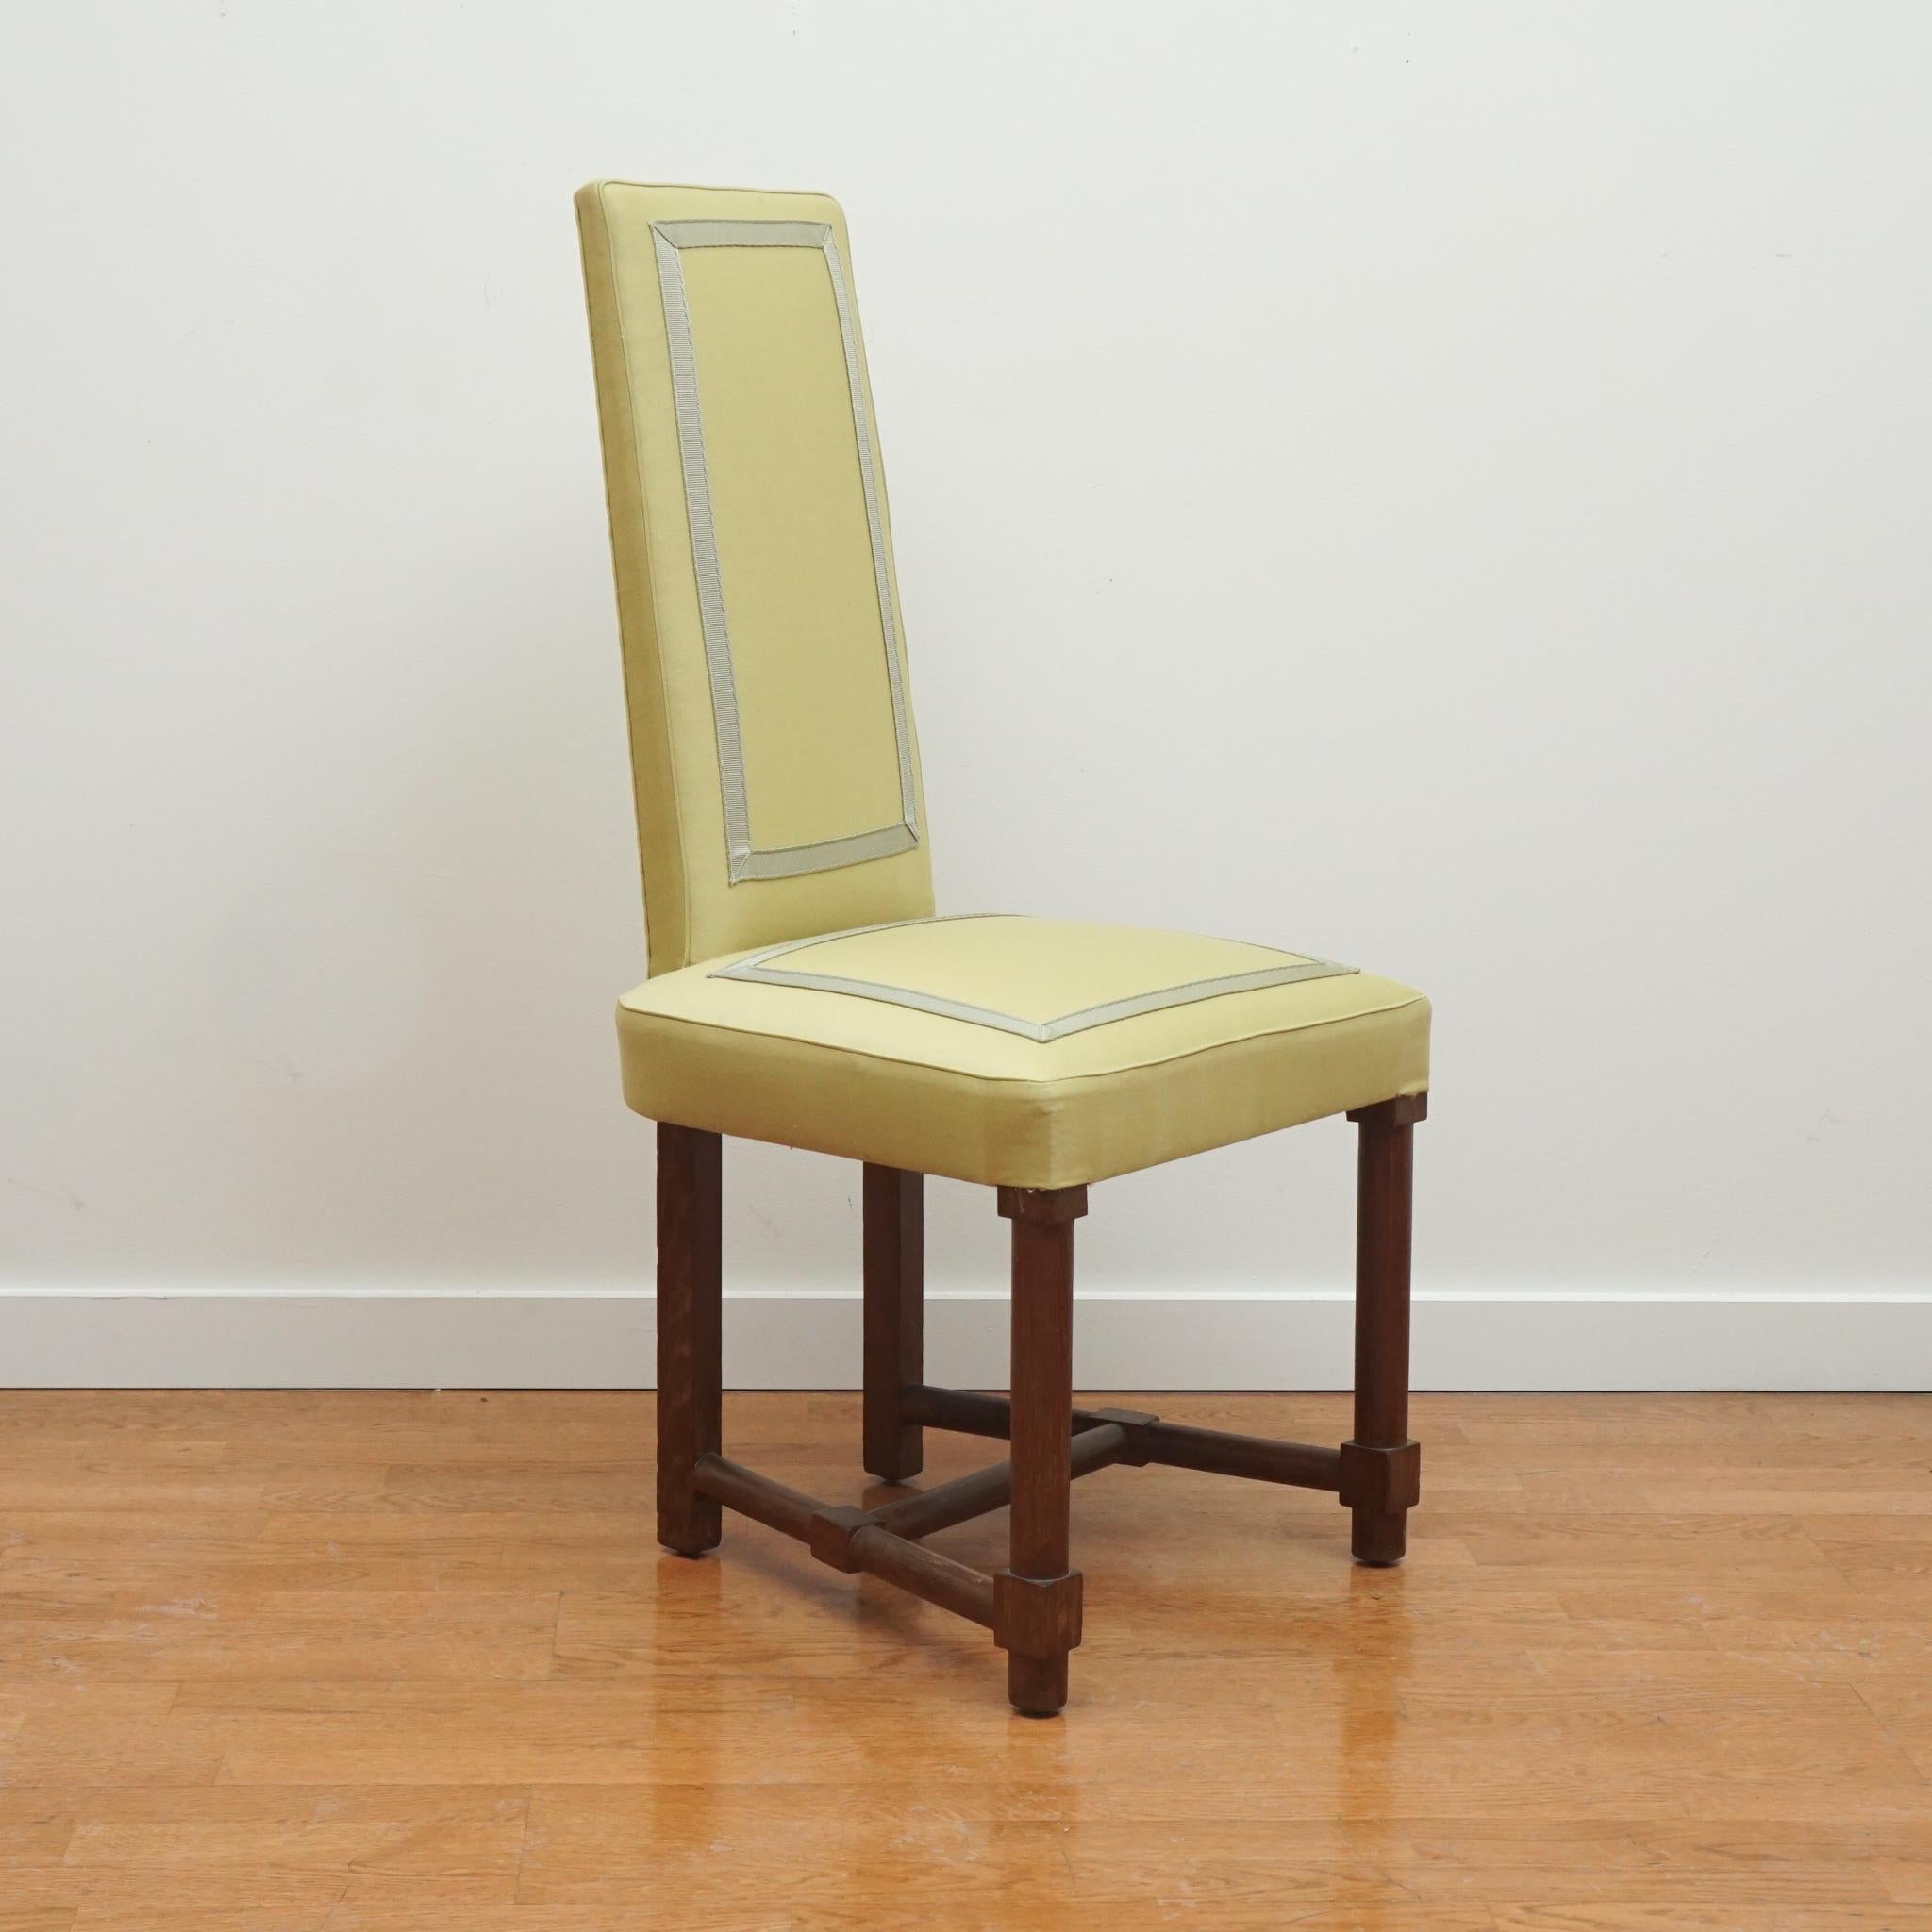 Dieser neoklassische Beistellstuhl mit hoher Rückenlehne wird dem französischen Designer Jacques Adnet um 1945 zugeschrieben. Die straffe Rückenlehne und der Sitz sind mit einem applizierten Zierband vorne und hinten versehen. Auch die Stuhlbeine